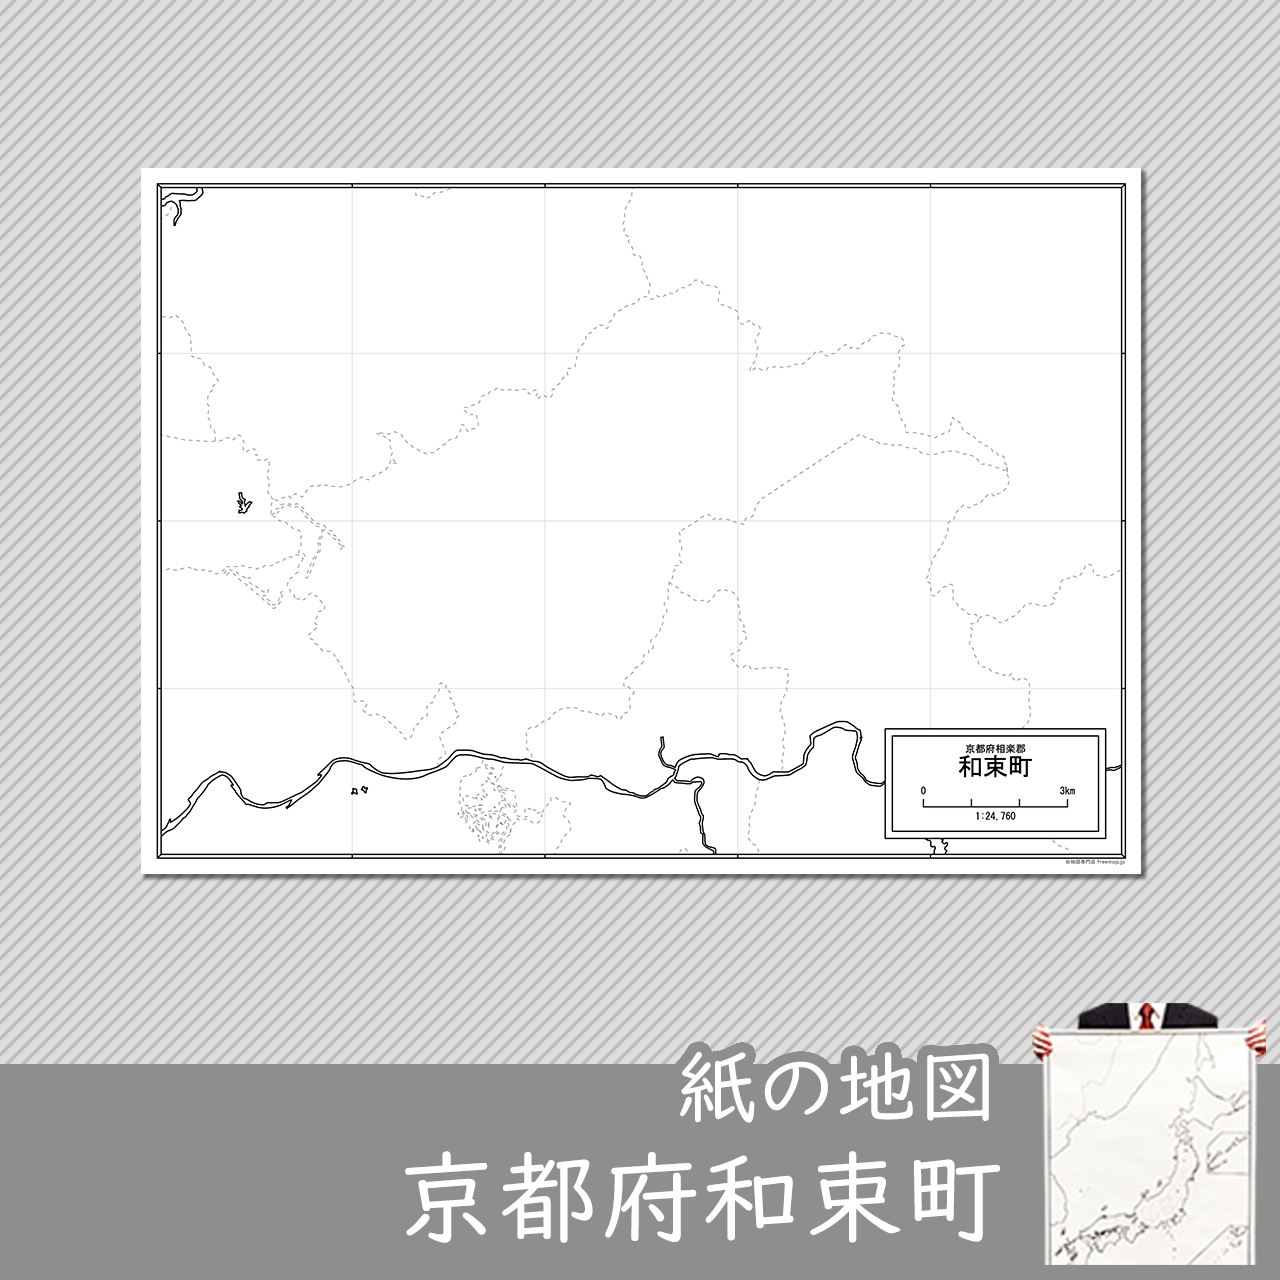 和束町の紙の白地図